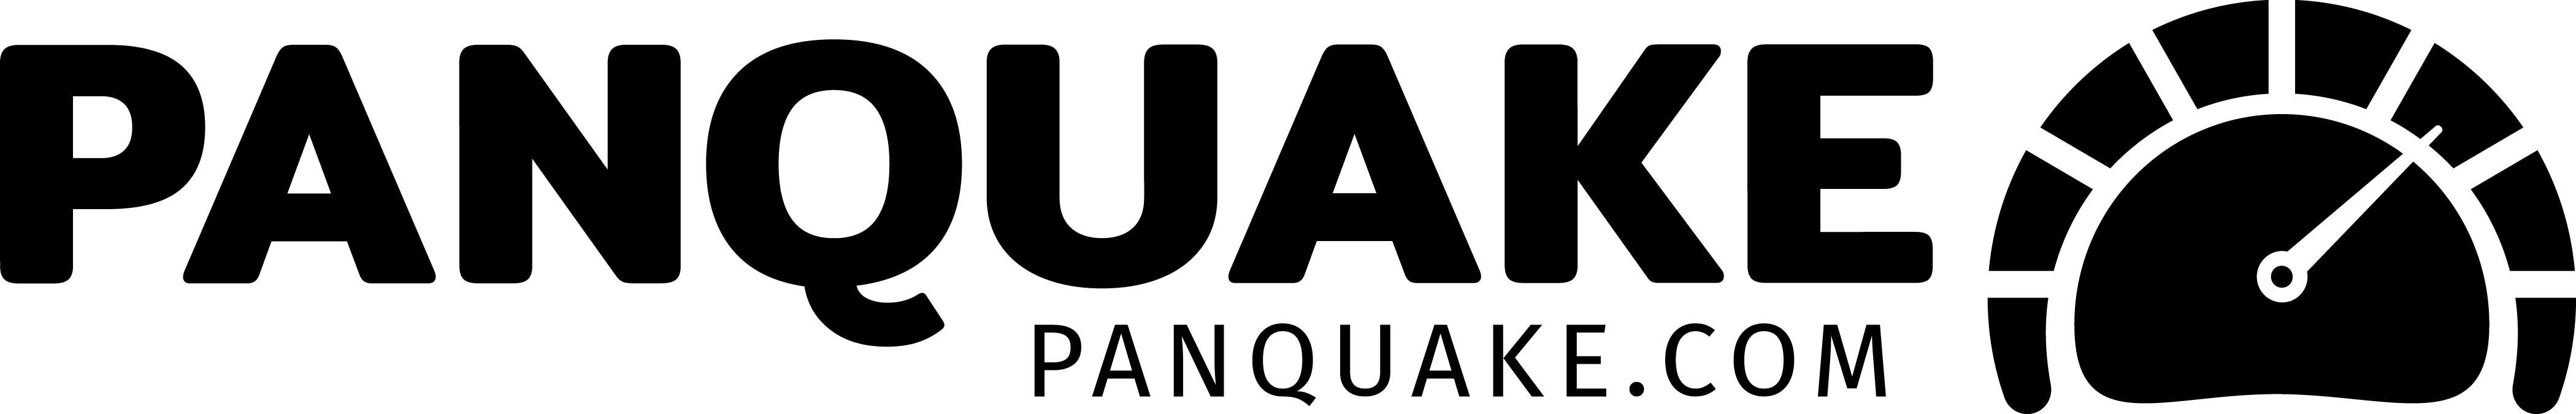 panquake-logo-landscape-rgb-black-sub-url